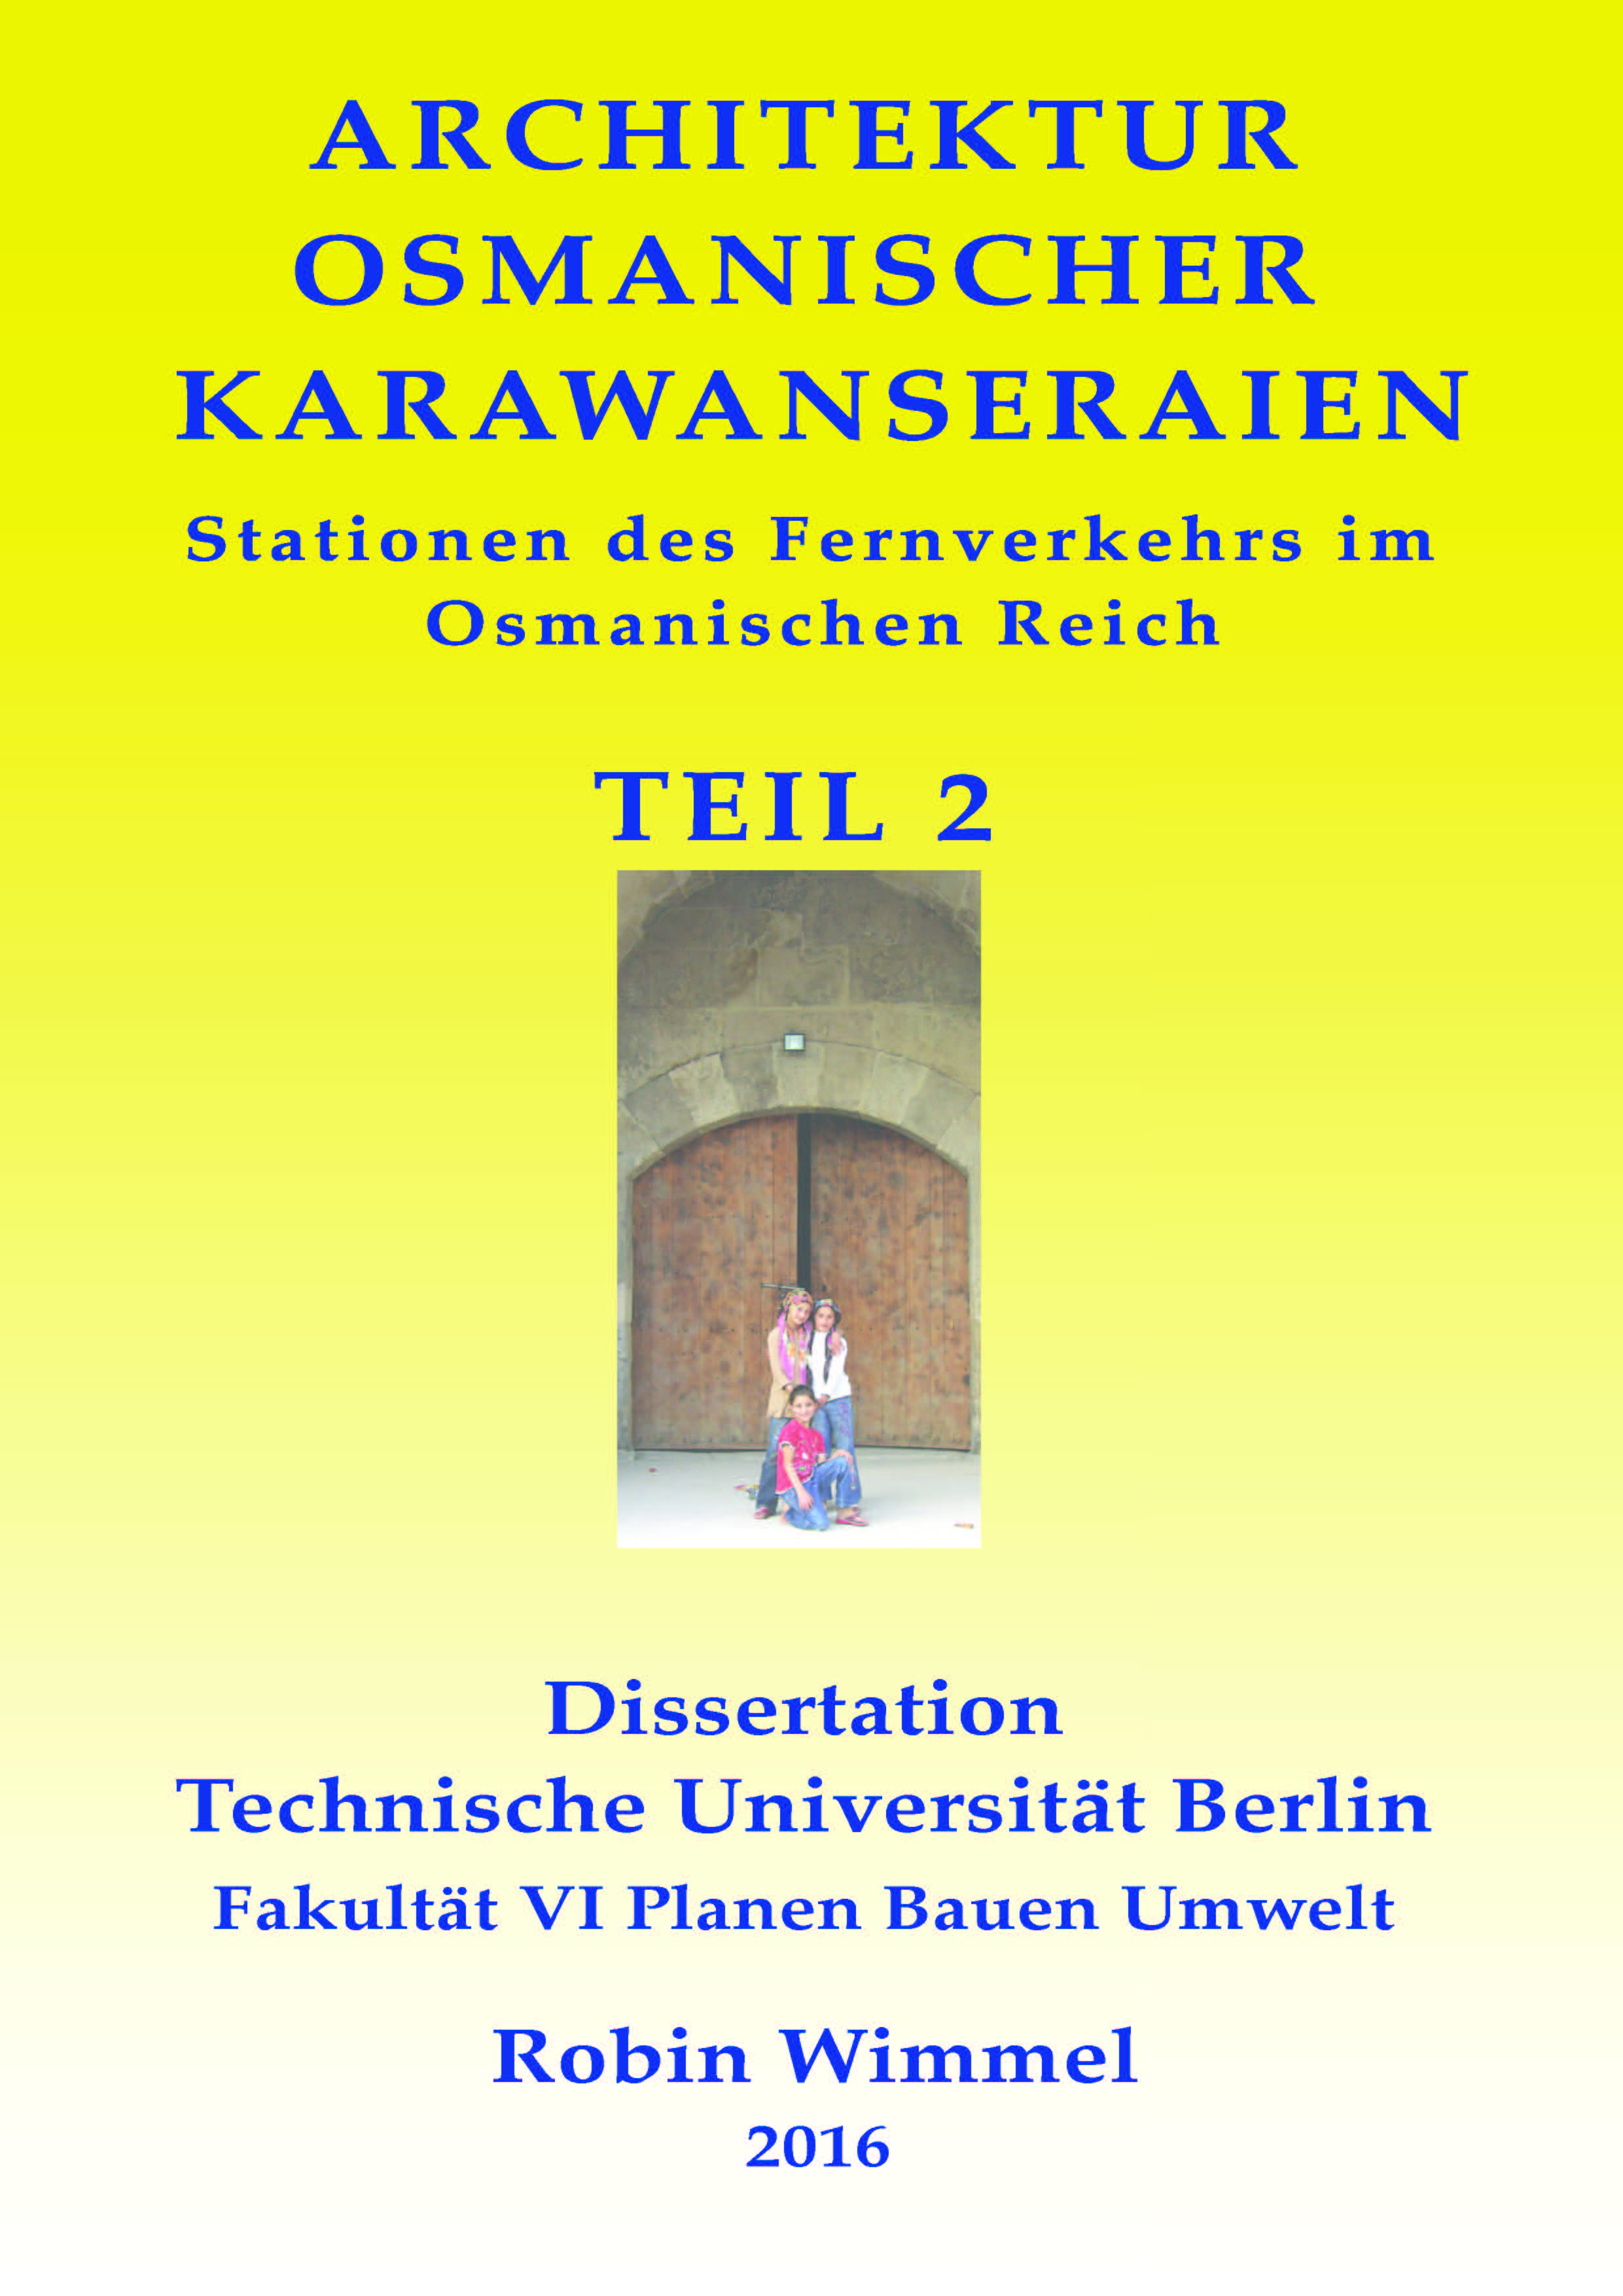 Architektur osmanischer Karawanseraien: Stationen des Fernverkehrs im Osmanischen Reich, Vol. 2